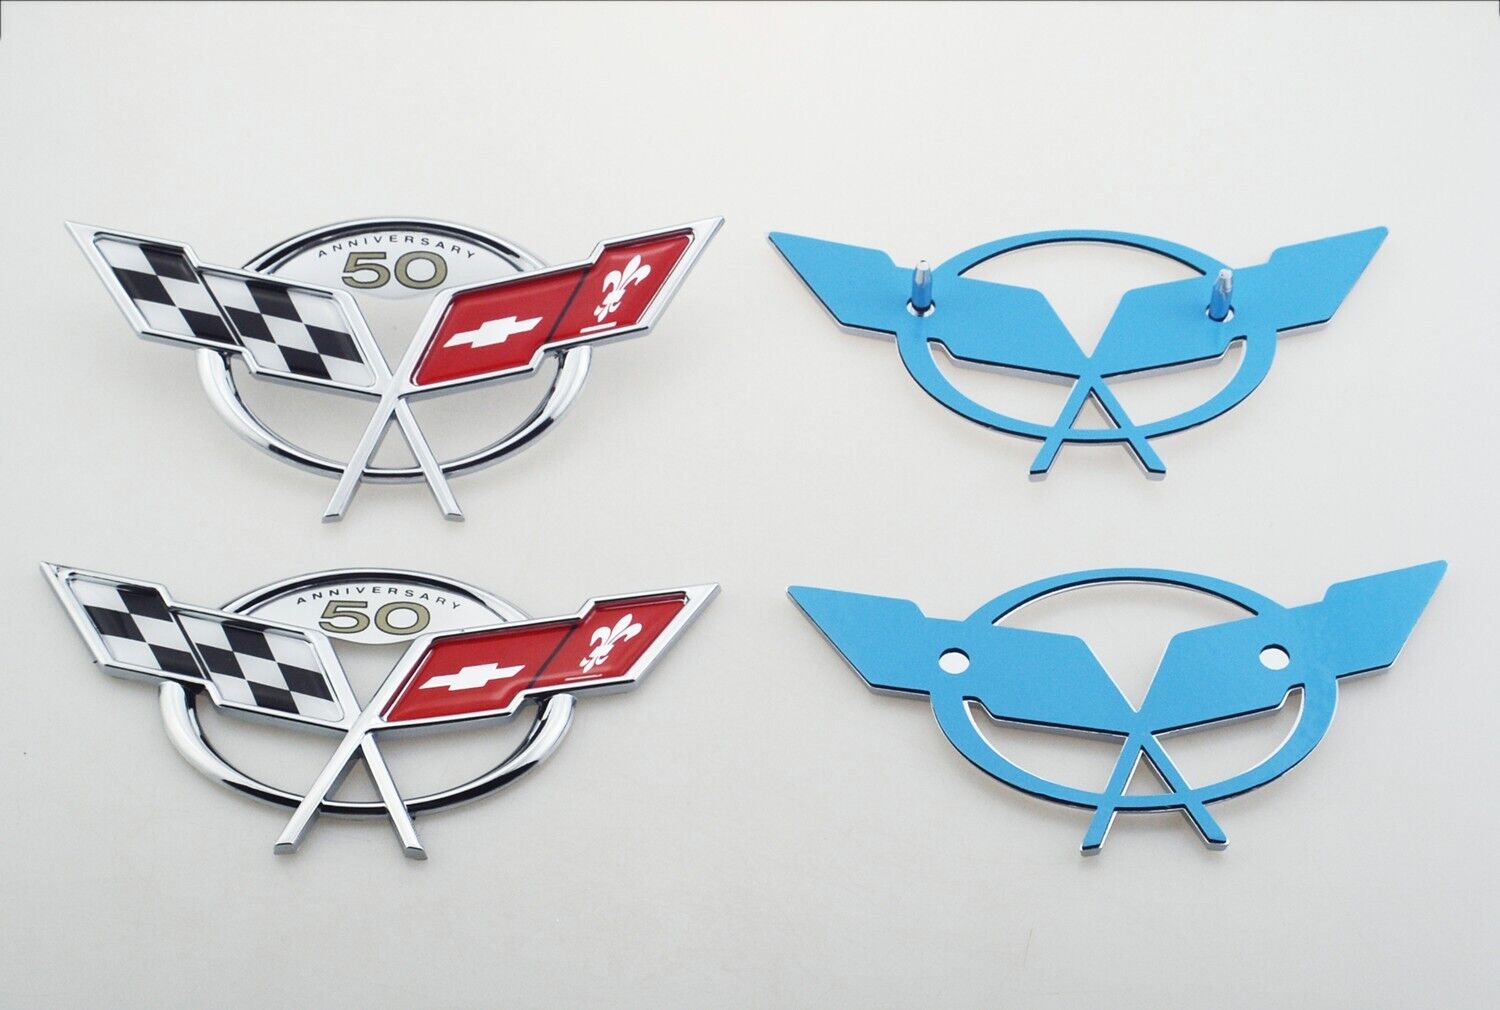 Pair Front / Rear 1997-2004 Corvette C5 Emblems Badges 50TH Anniversary Chrome